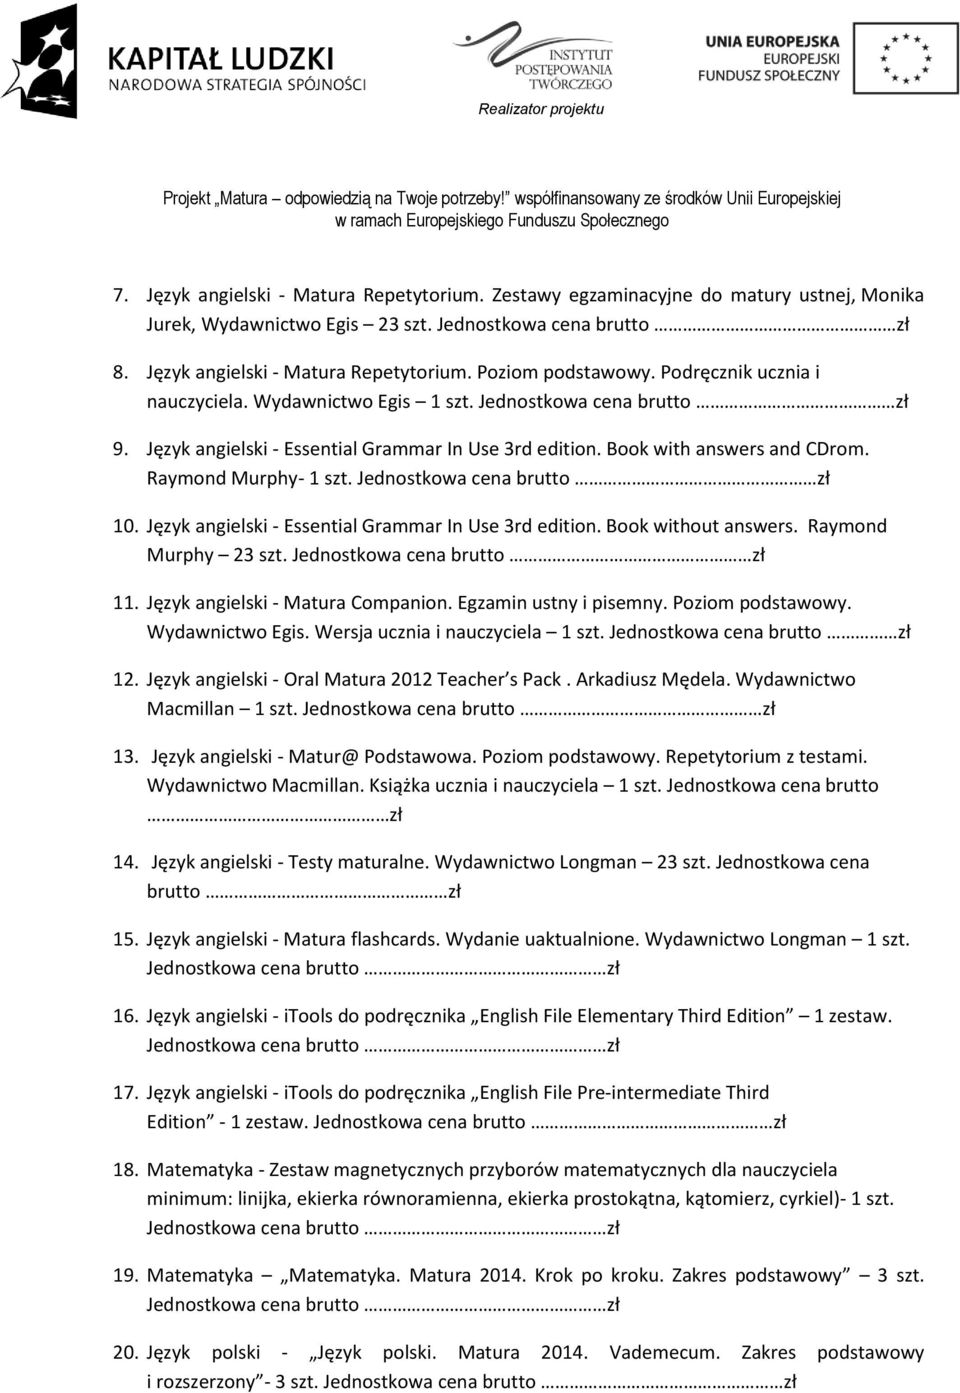 Język angielski - Essential Grammar In Use 3rd edition. Book without answers. Raymond Murphy 23 szt. 11. Język angielski - Matura Companion. Egzamin ustny i pisemny. Poziom podstawowy.